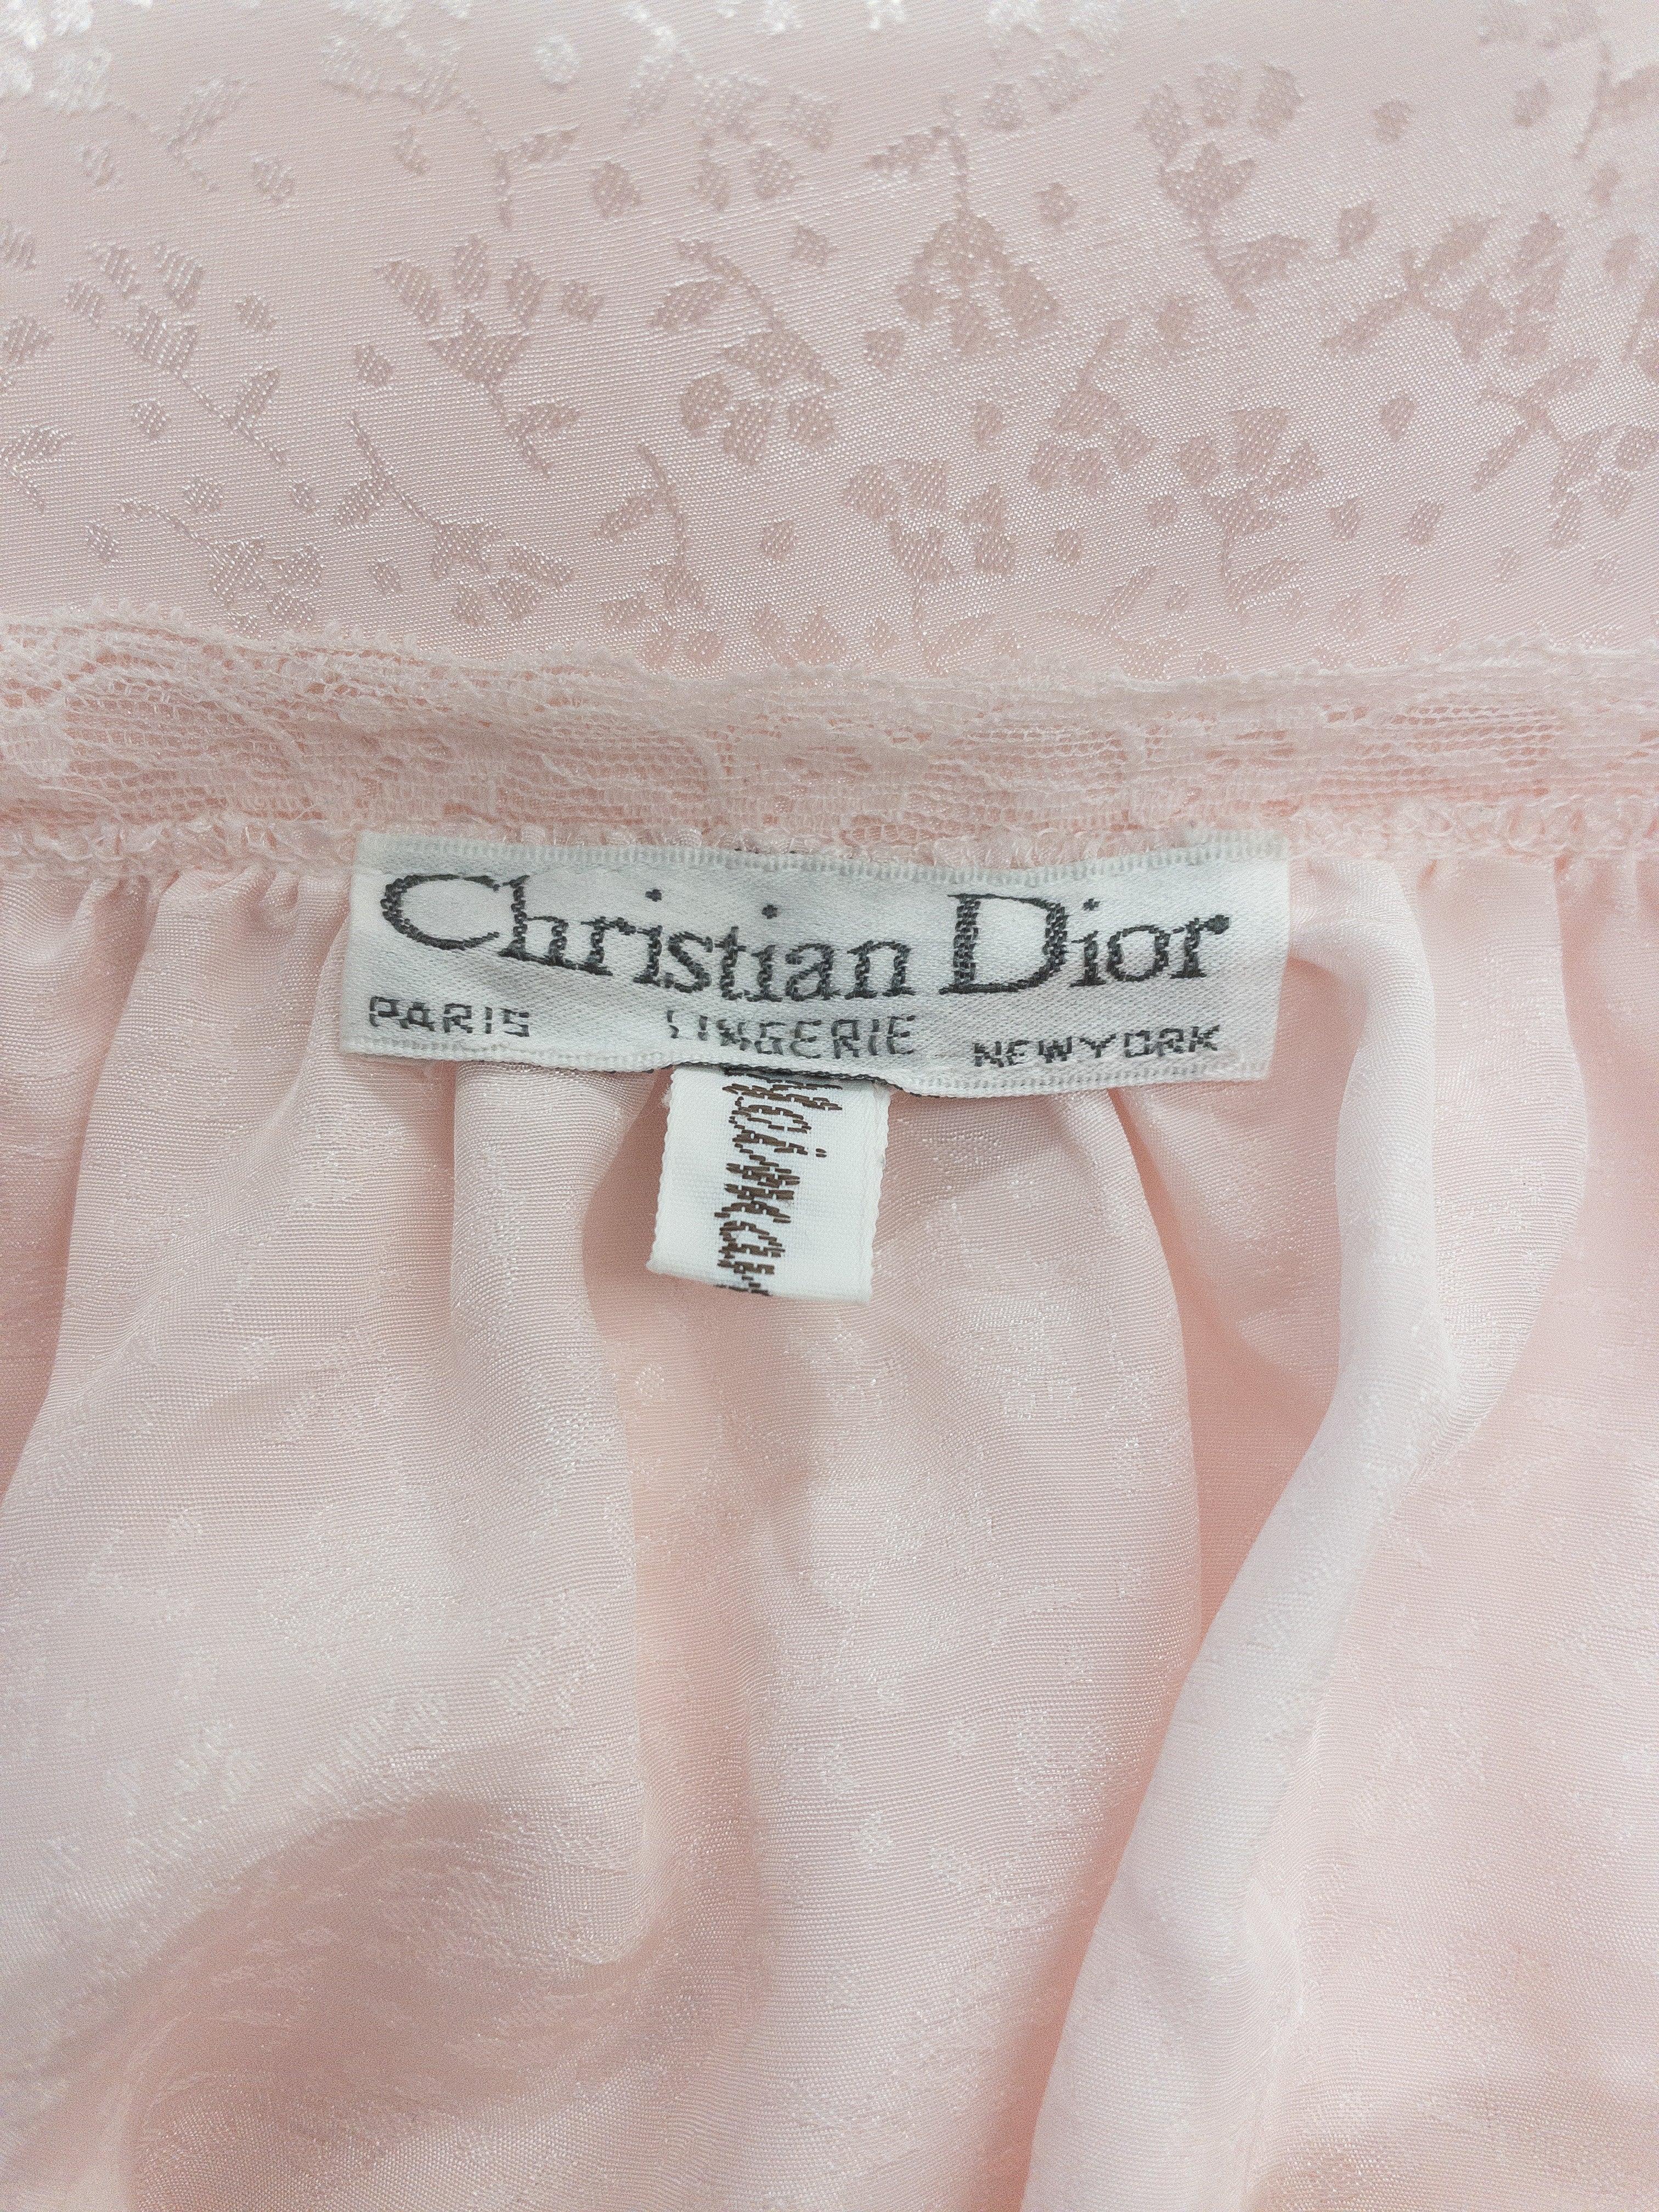 Vintage Christian Dior Lingerie Natkjole